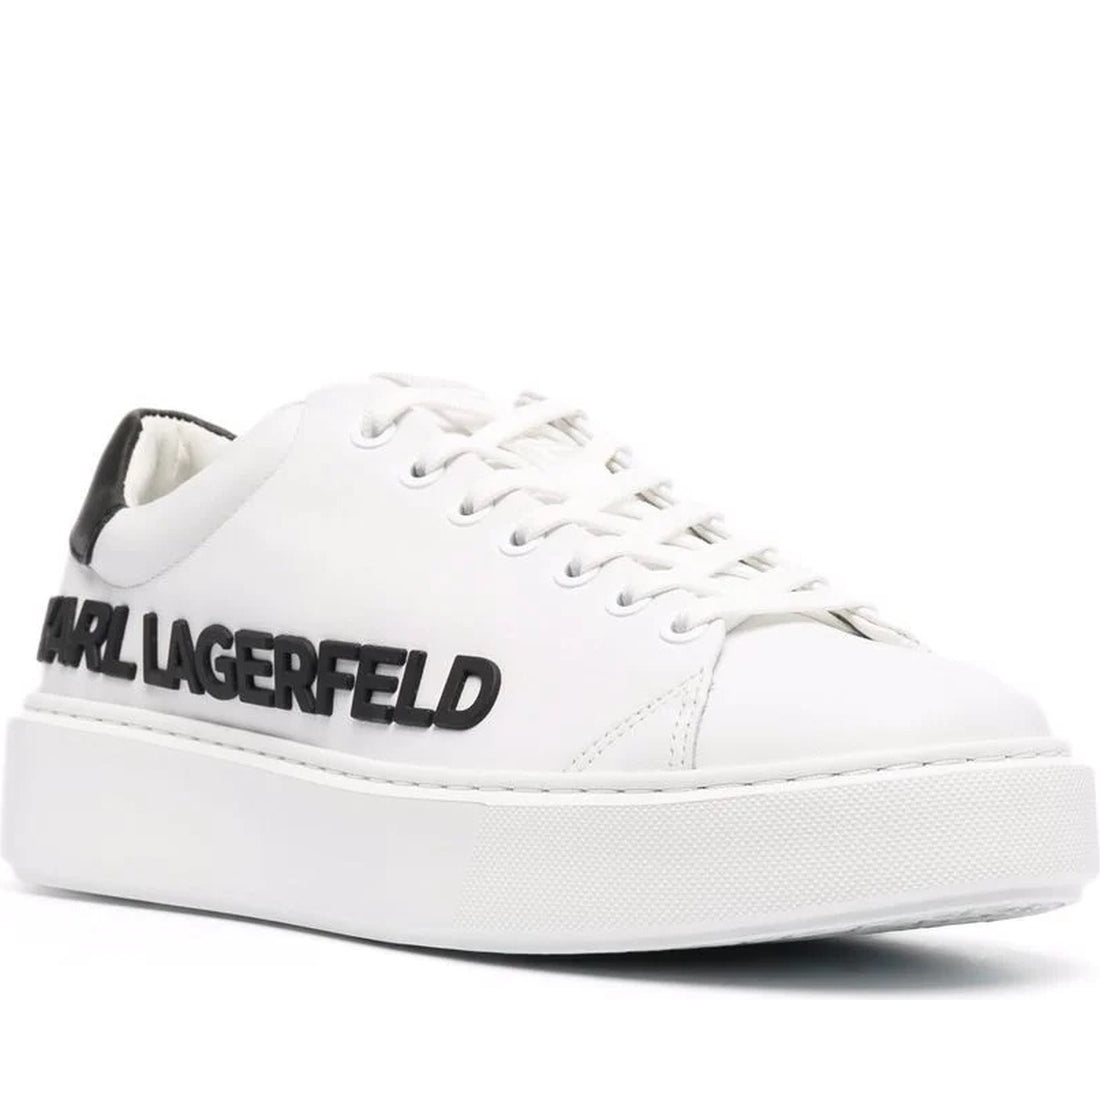 KARL LAGERFELD mens white lthr, black maxi kup karl sneakers | Vilbury London